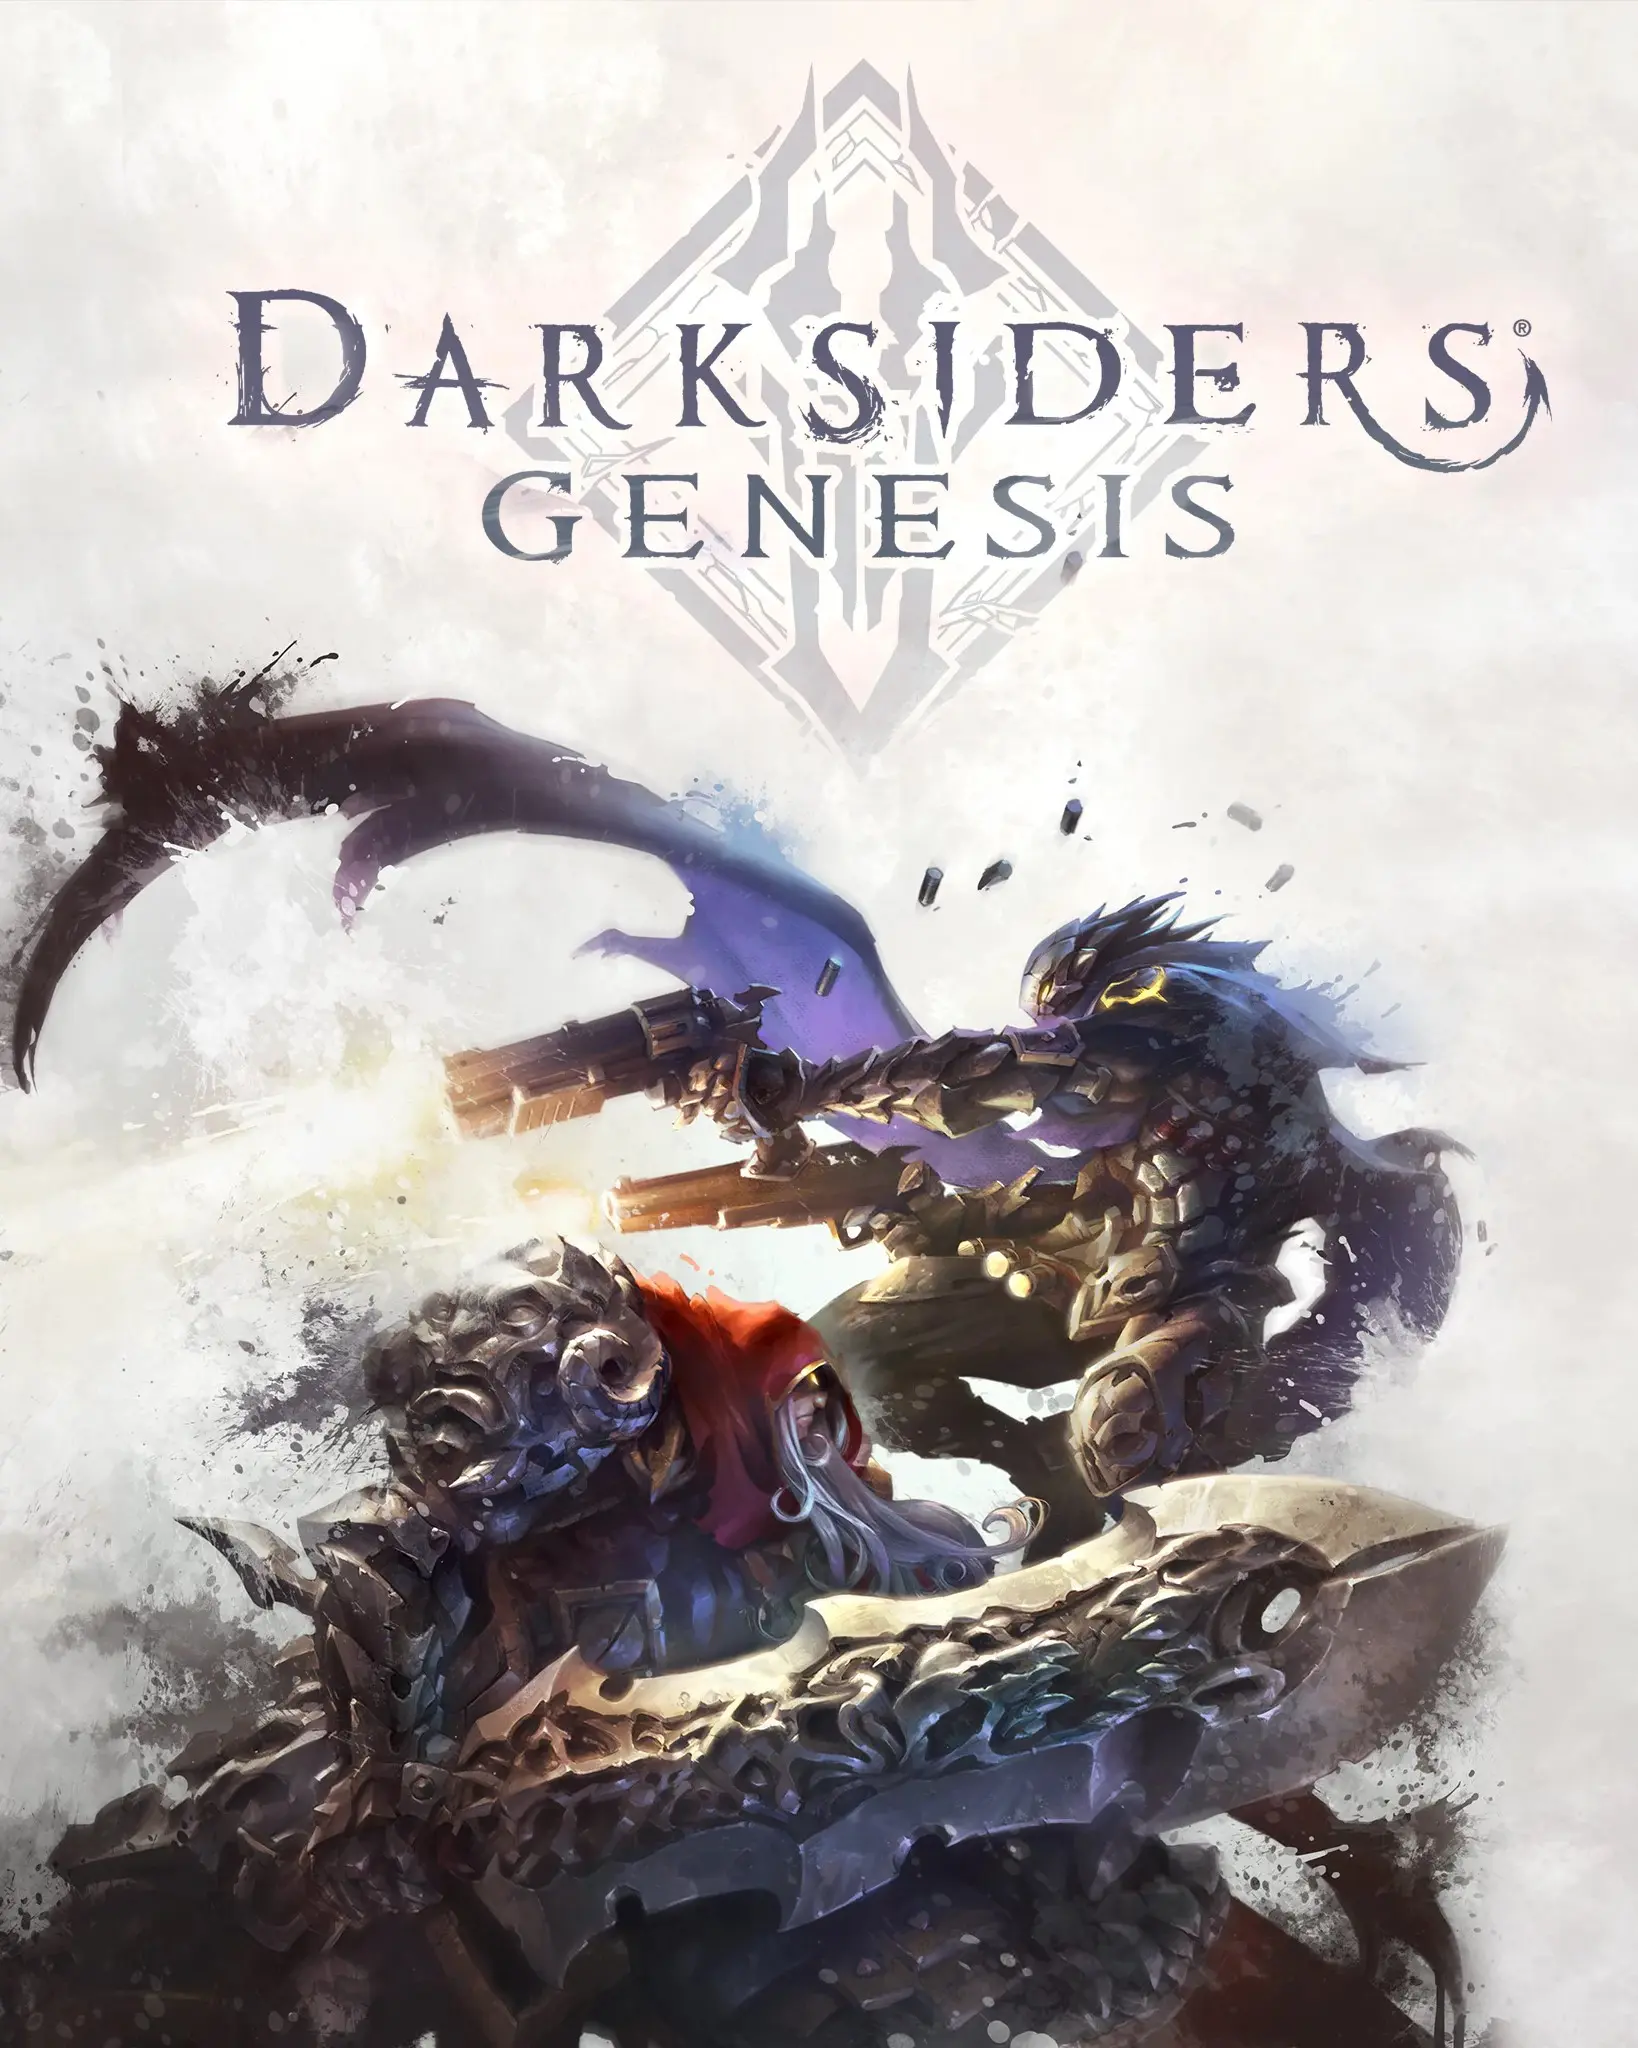 Darksiders: Genesis (AR) (Xbox One / Xbox Series X|S) - Xbox Live - Digital Code